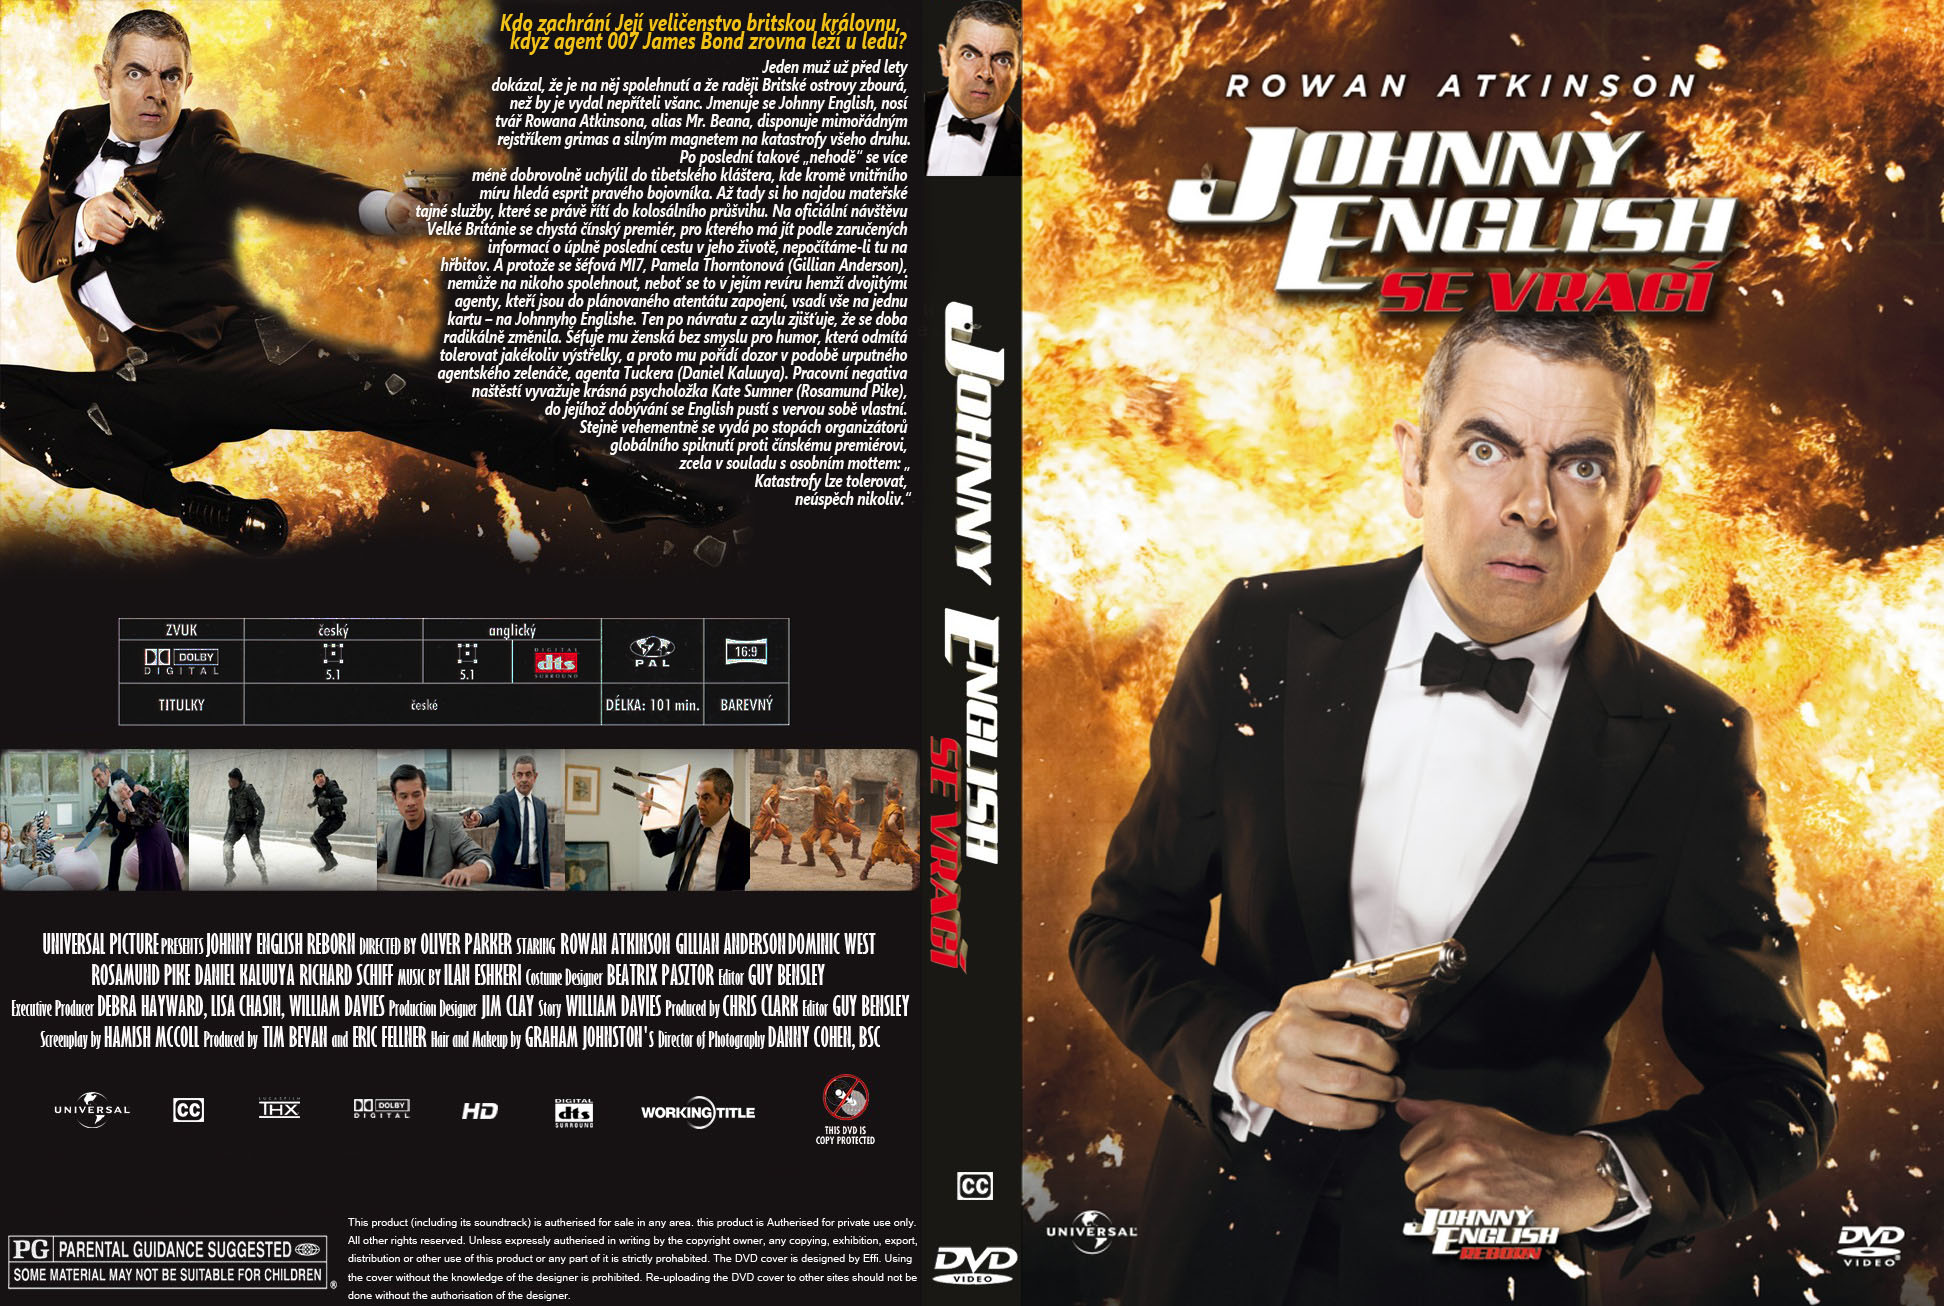 Джонни инглиш отзывы. Джонни Инглиш 4. Агент Джонни Инглиш Blu ray. Агент Джонни Инглиш перезагрузка Blu-ray. Агент Джонни Инглиш обложка.